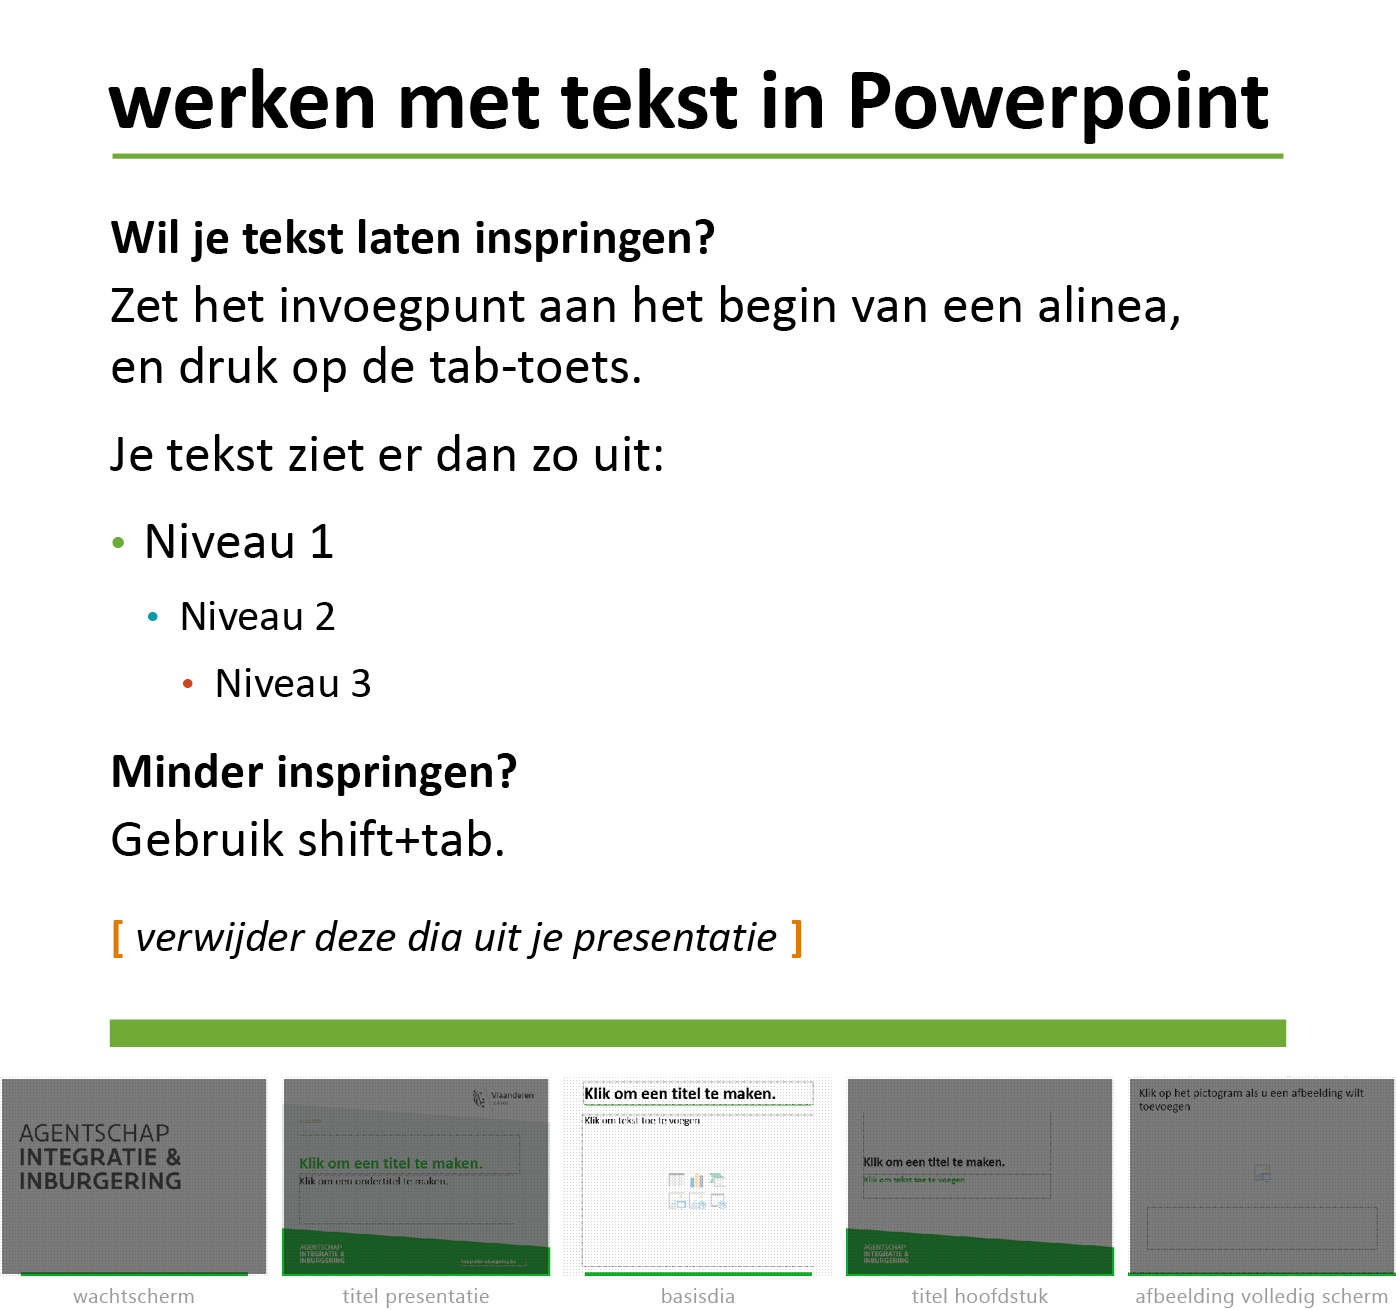 Instructie "werken met tekst in Powerpoint" uit het Powerpoint-sjabloon van Agentschap Integratie en Inburgering.